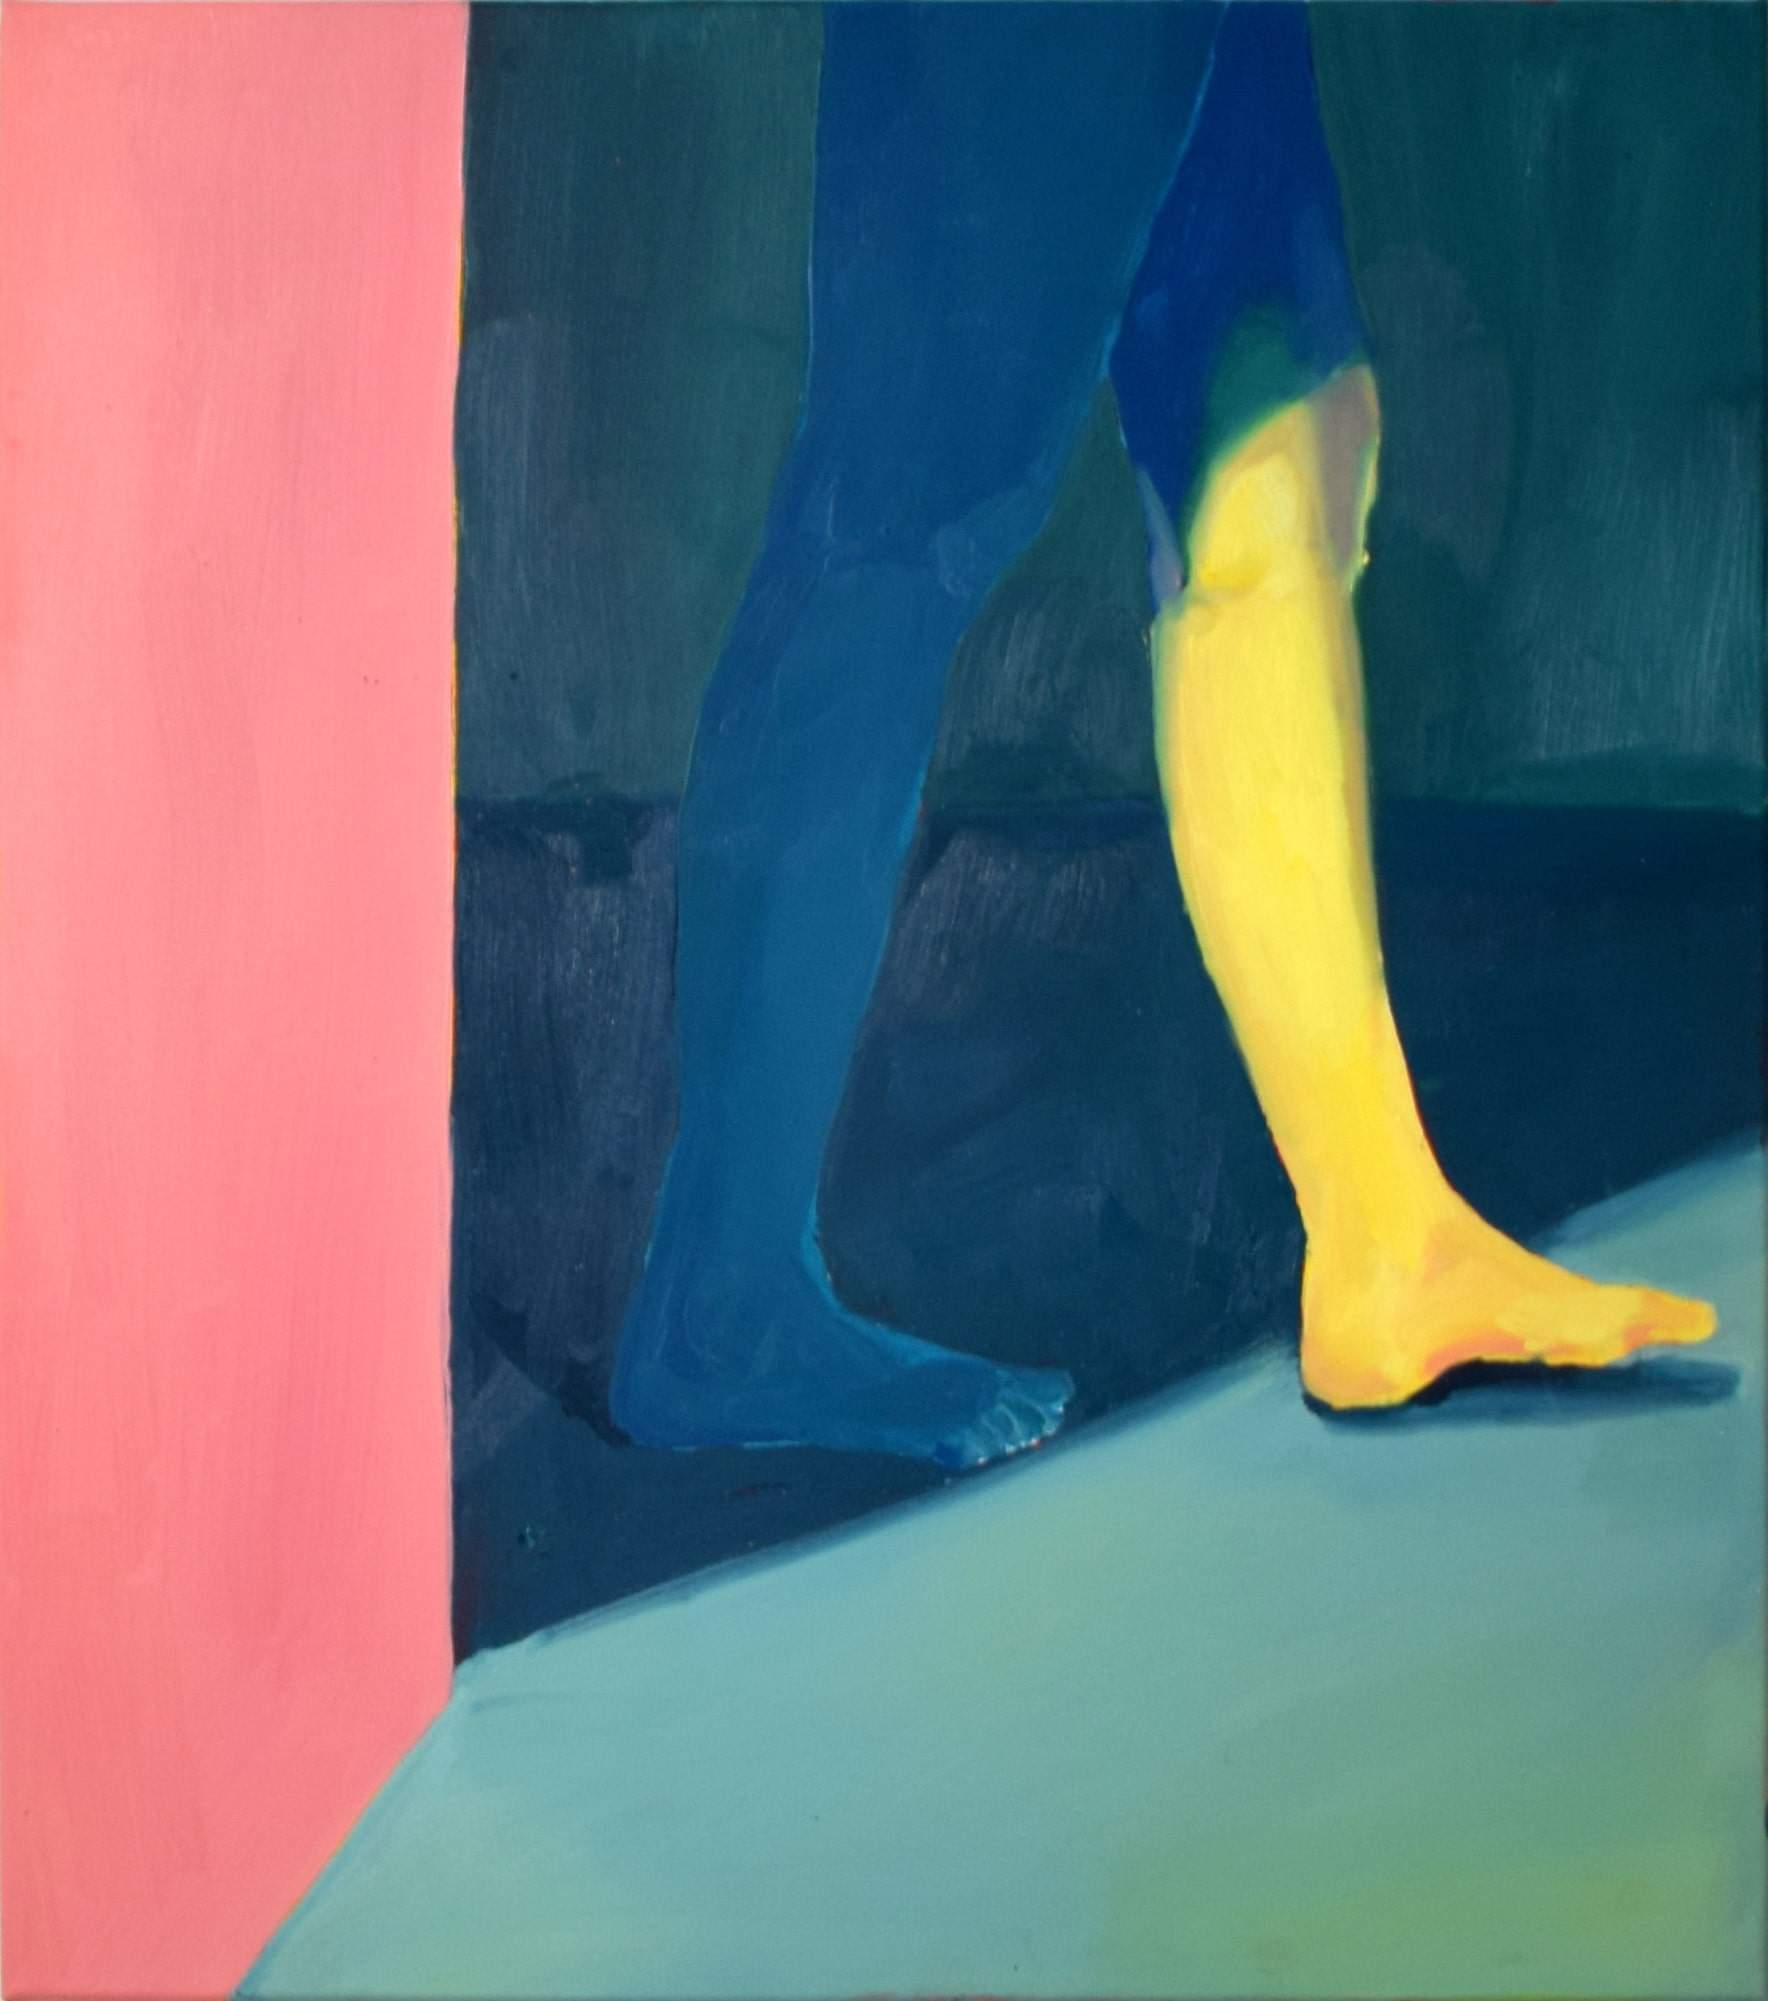 acryl and oil on canvas, 70 x 80 cm, 2020